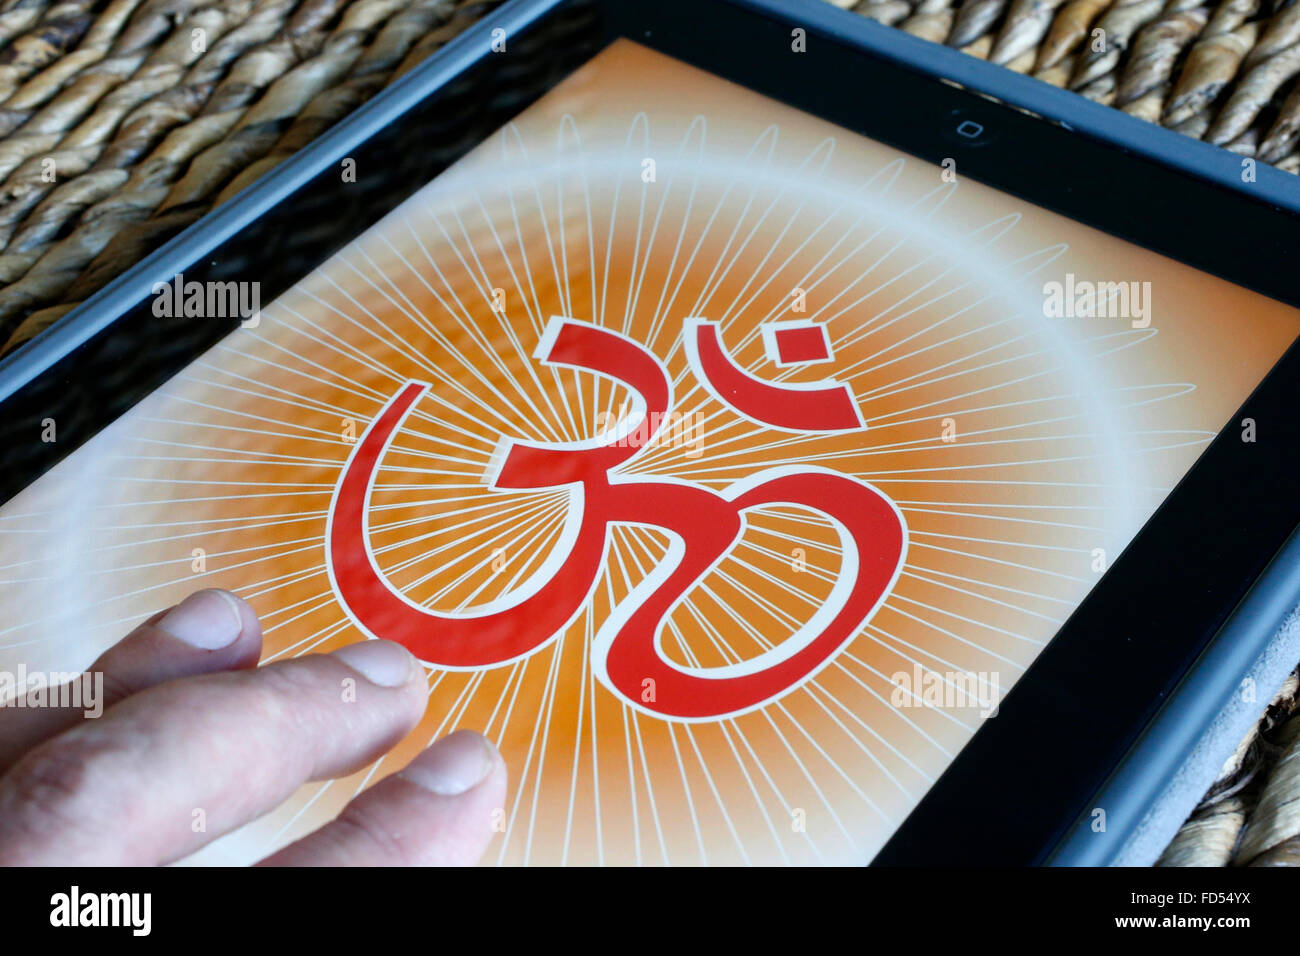 Om en un Ipad. El Om es un mantra y mística sílaba en Sánscrito de origen hindú. Foto de stock